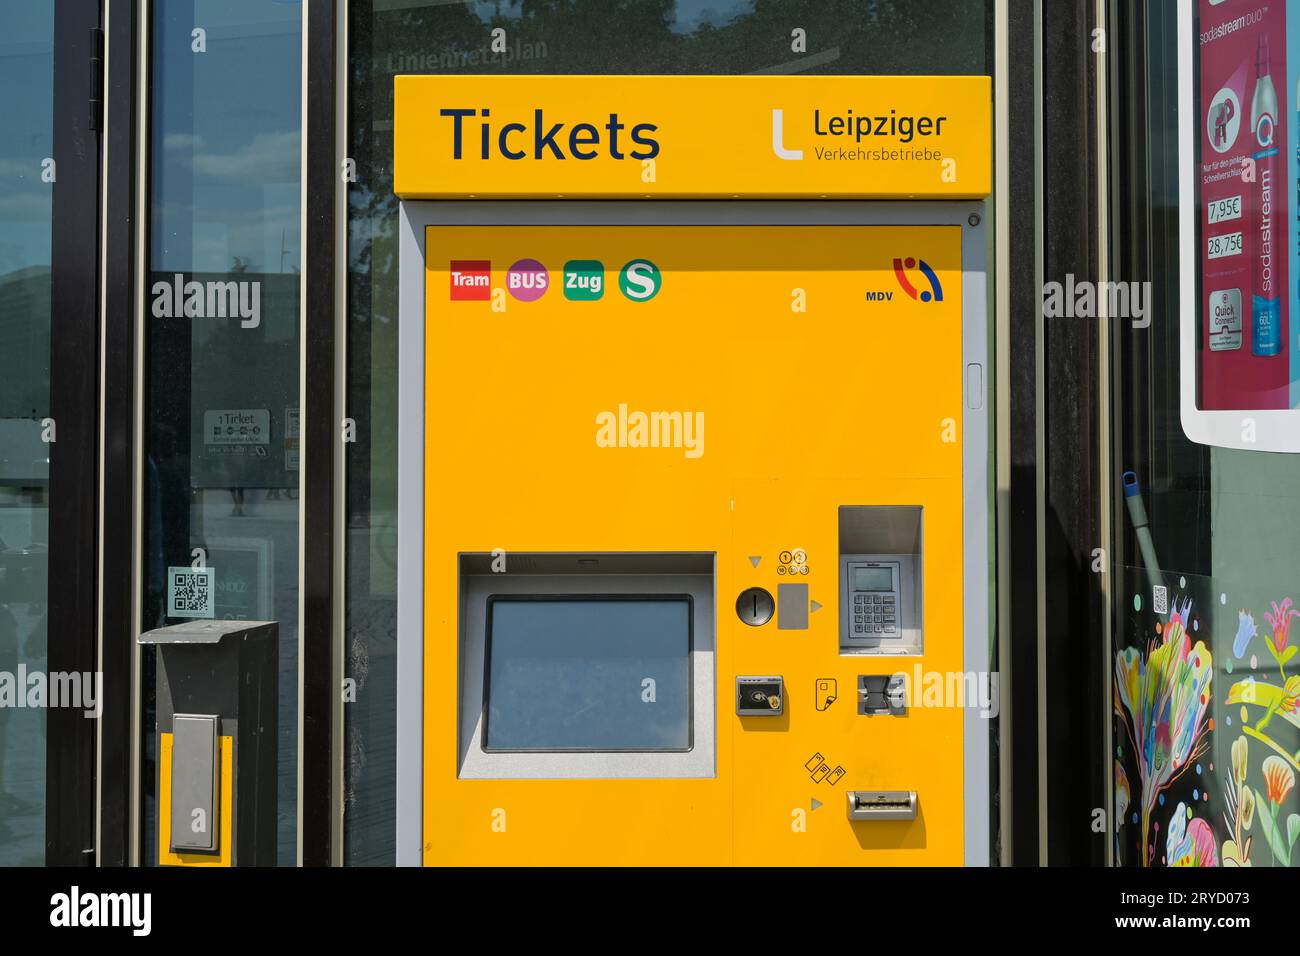 Ticket Automat, Leipziger Verkehrsbetriebe, Leipzig, Sachsen, Deutschland Stock Photo